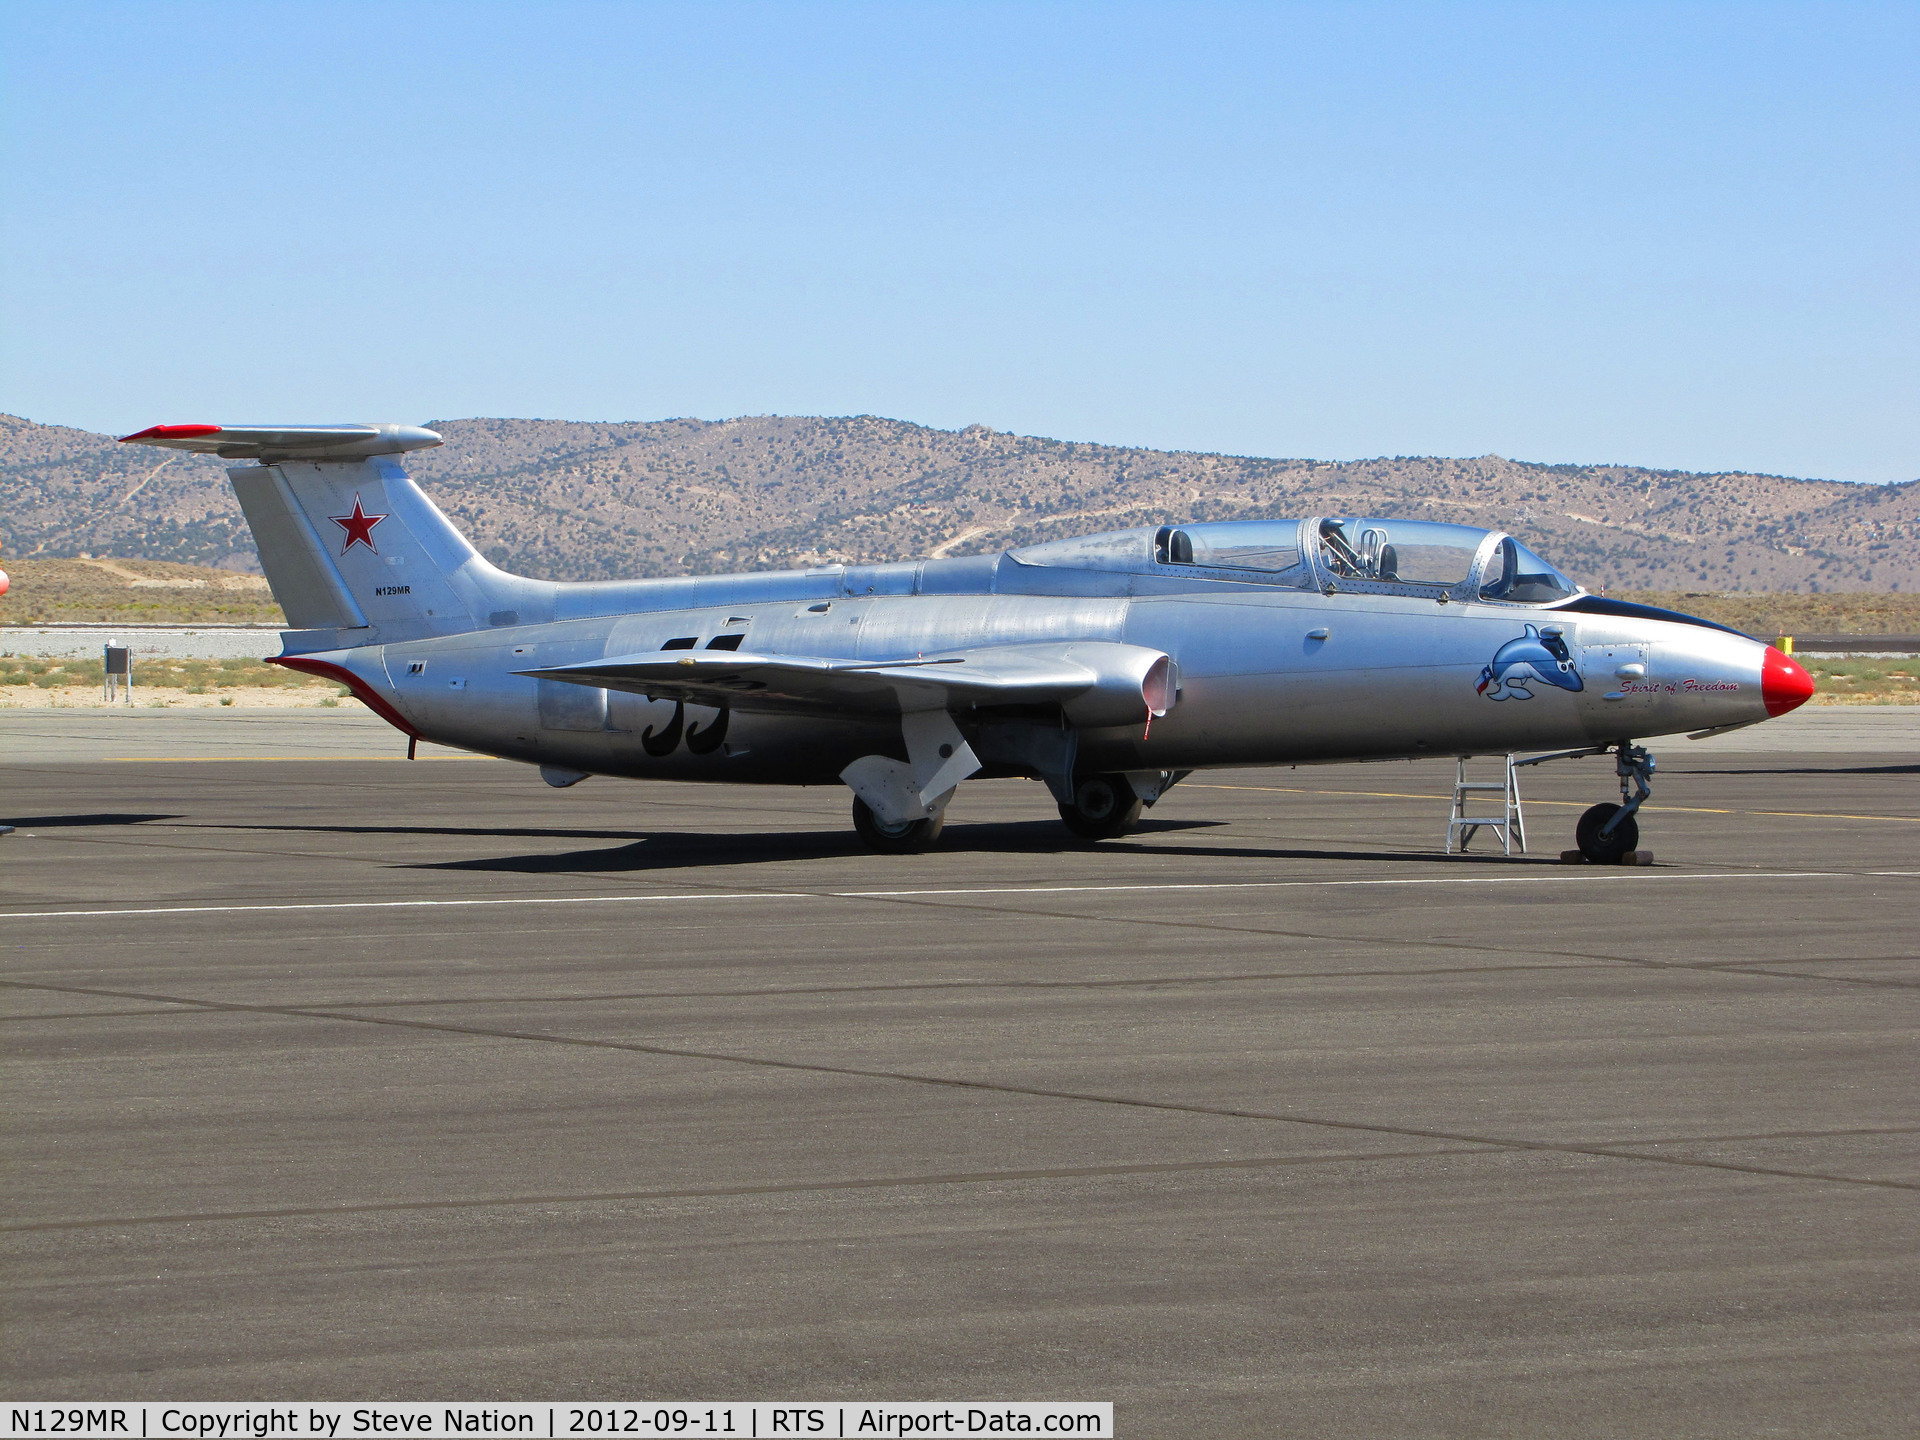 N129MR, 1966 Aero L-29 Delfin C/N 1234, L-29 Delfin #55 